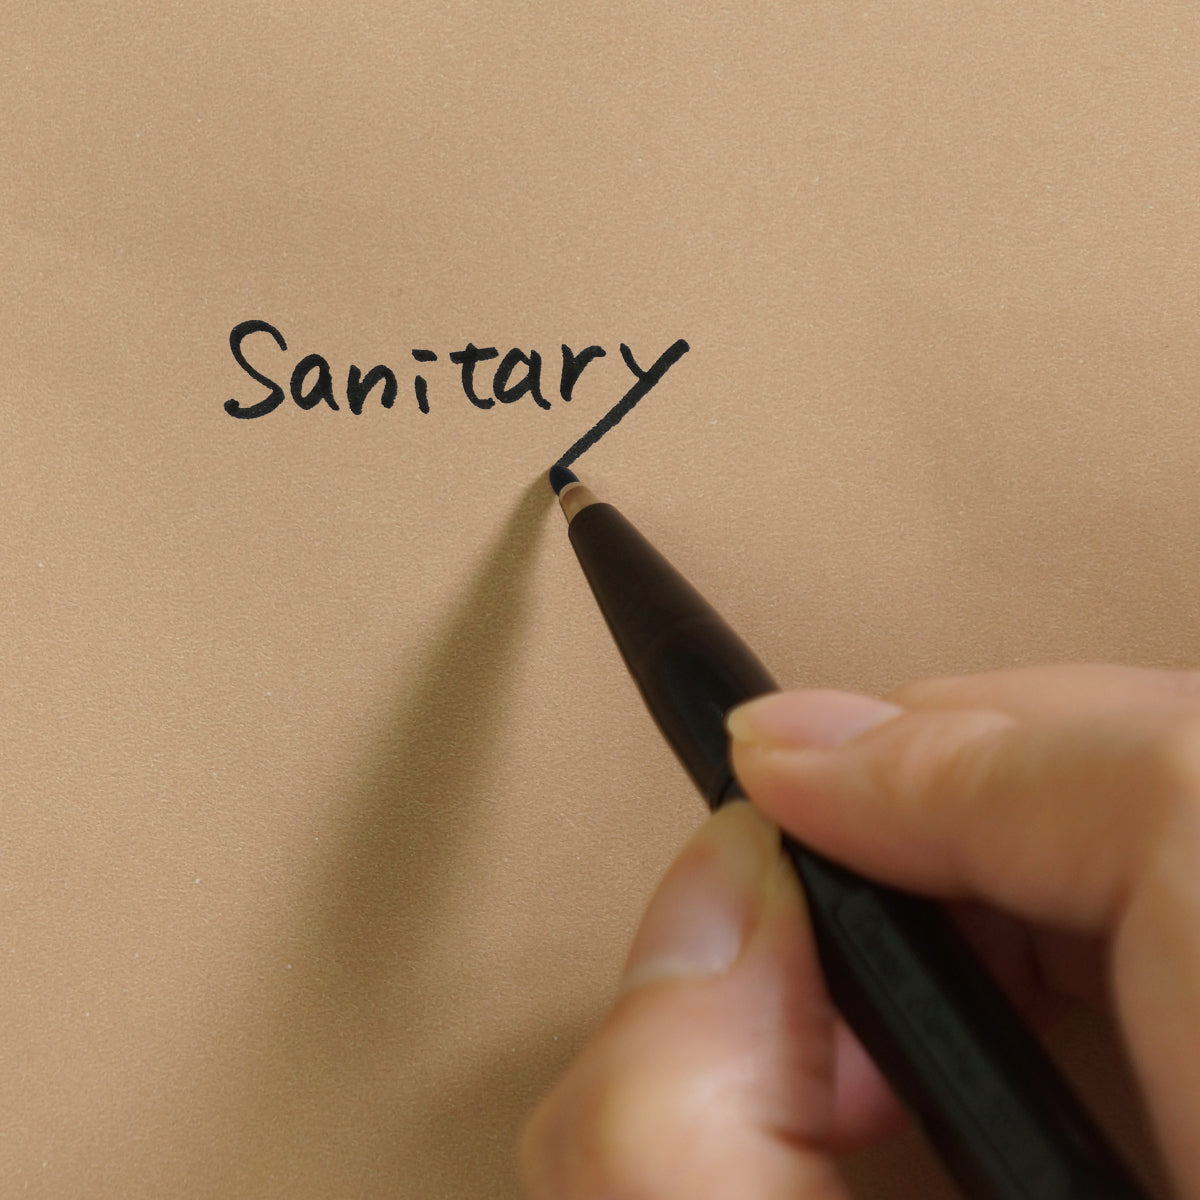 表面は紙製なので水性ペンで記入が可能で、使用用途などを書いておけます。